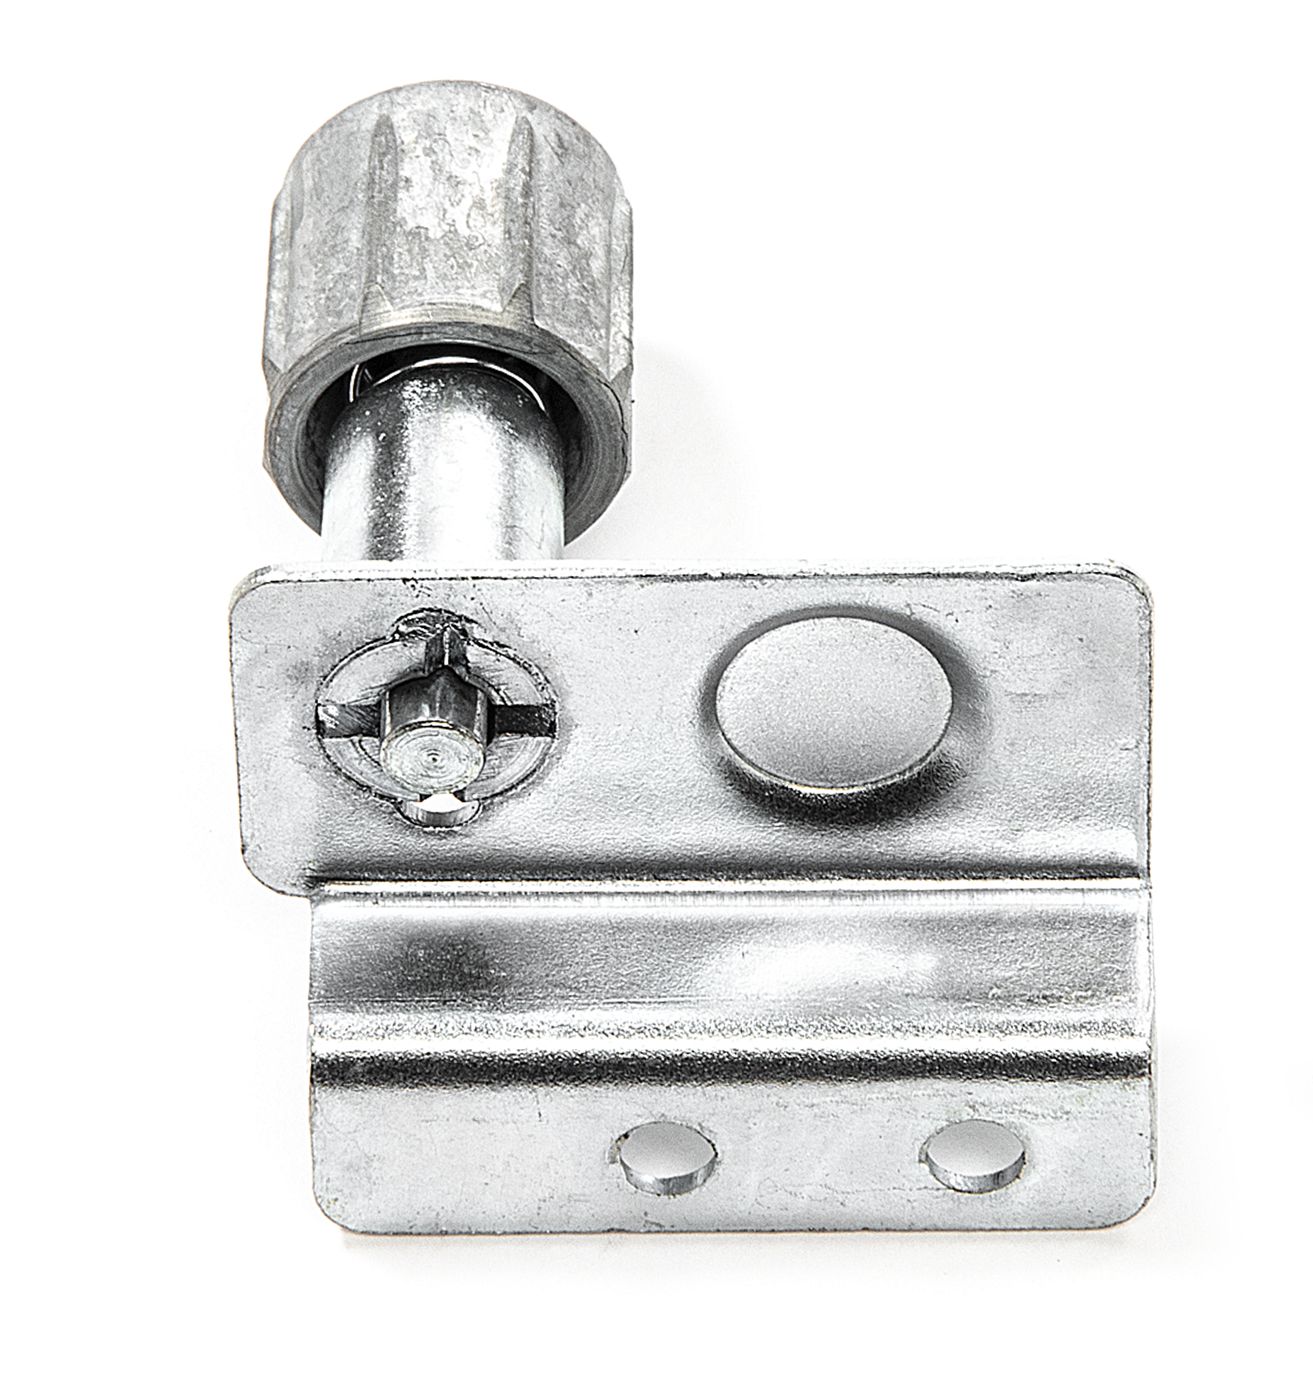 Türverriegelungs-Mechanismus
Door lock remote control
Mécanism